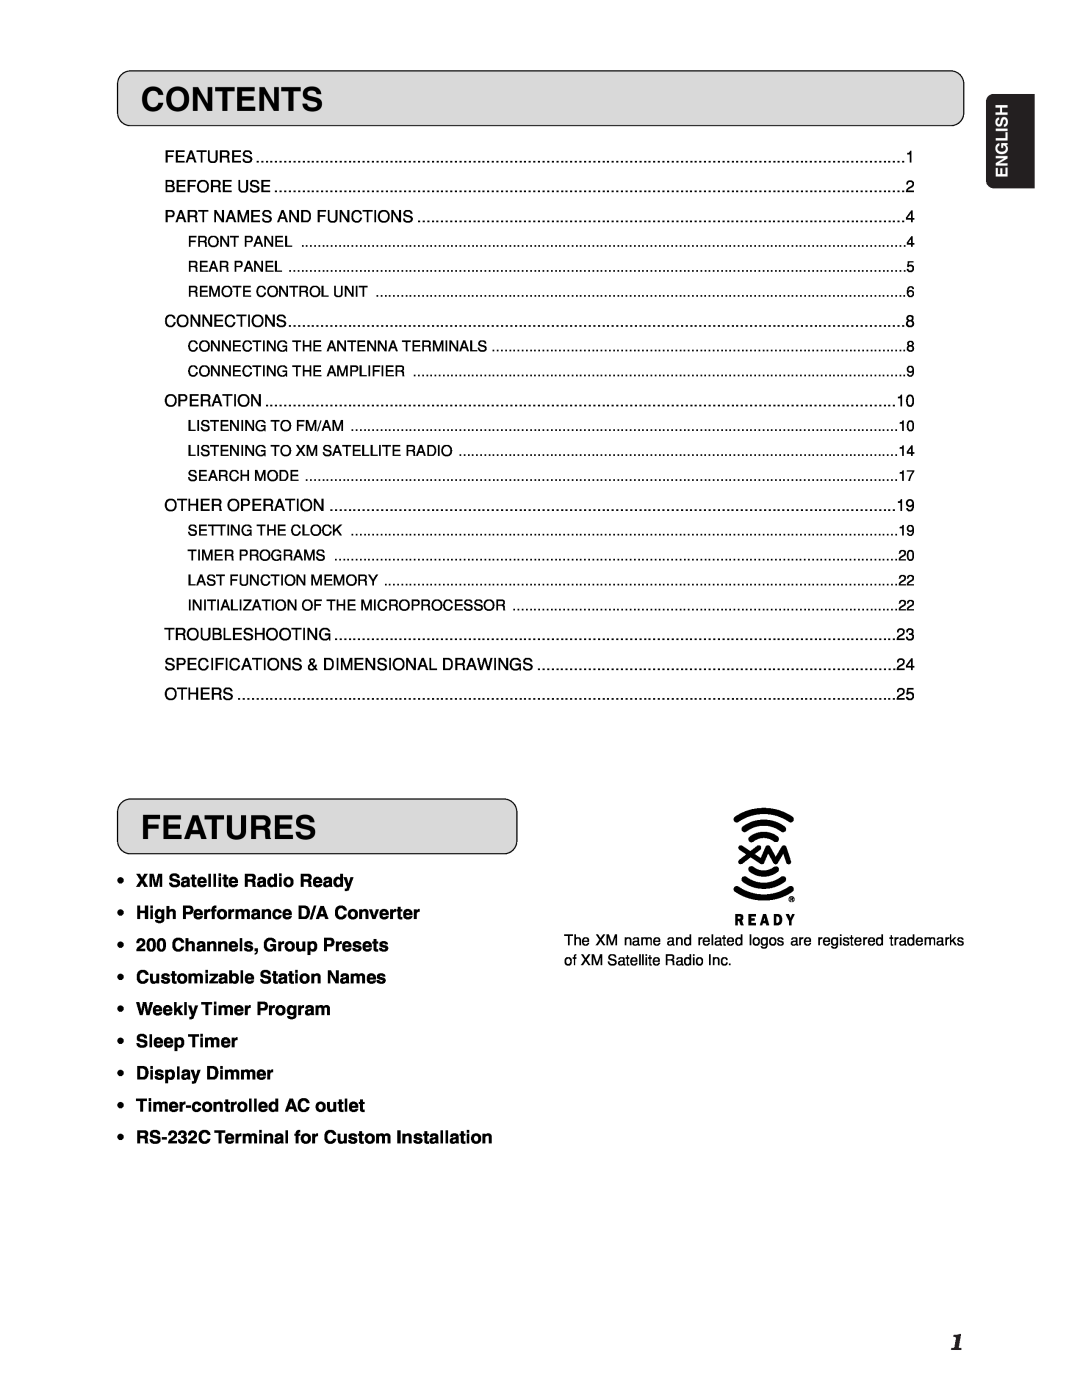 Marantz ST7001 manual Contents, Features 